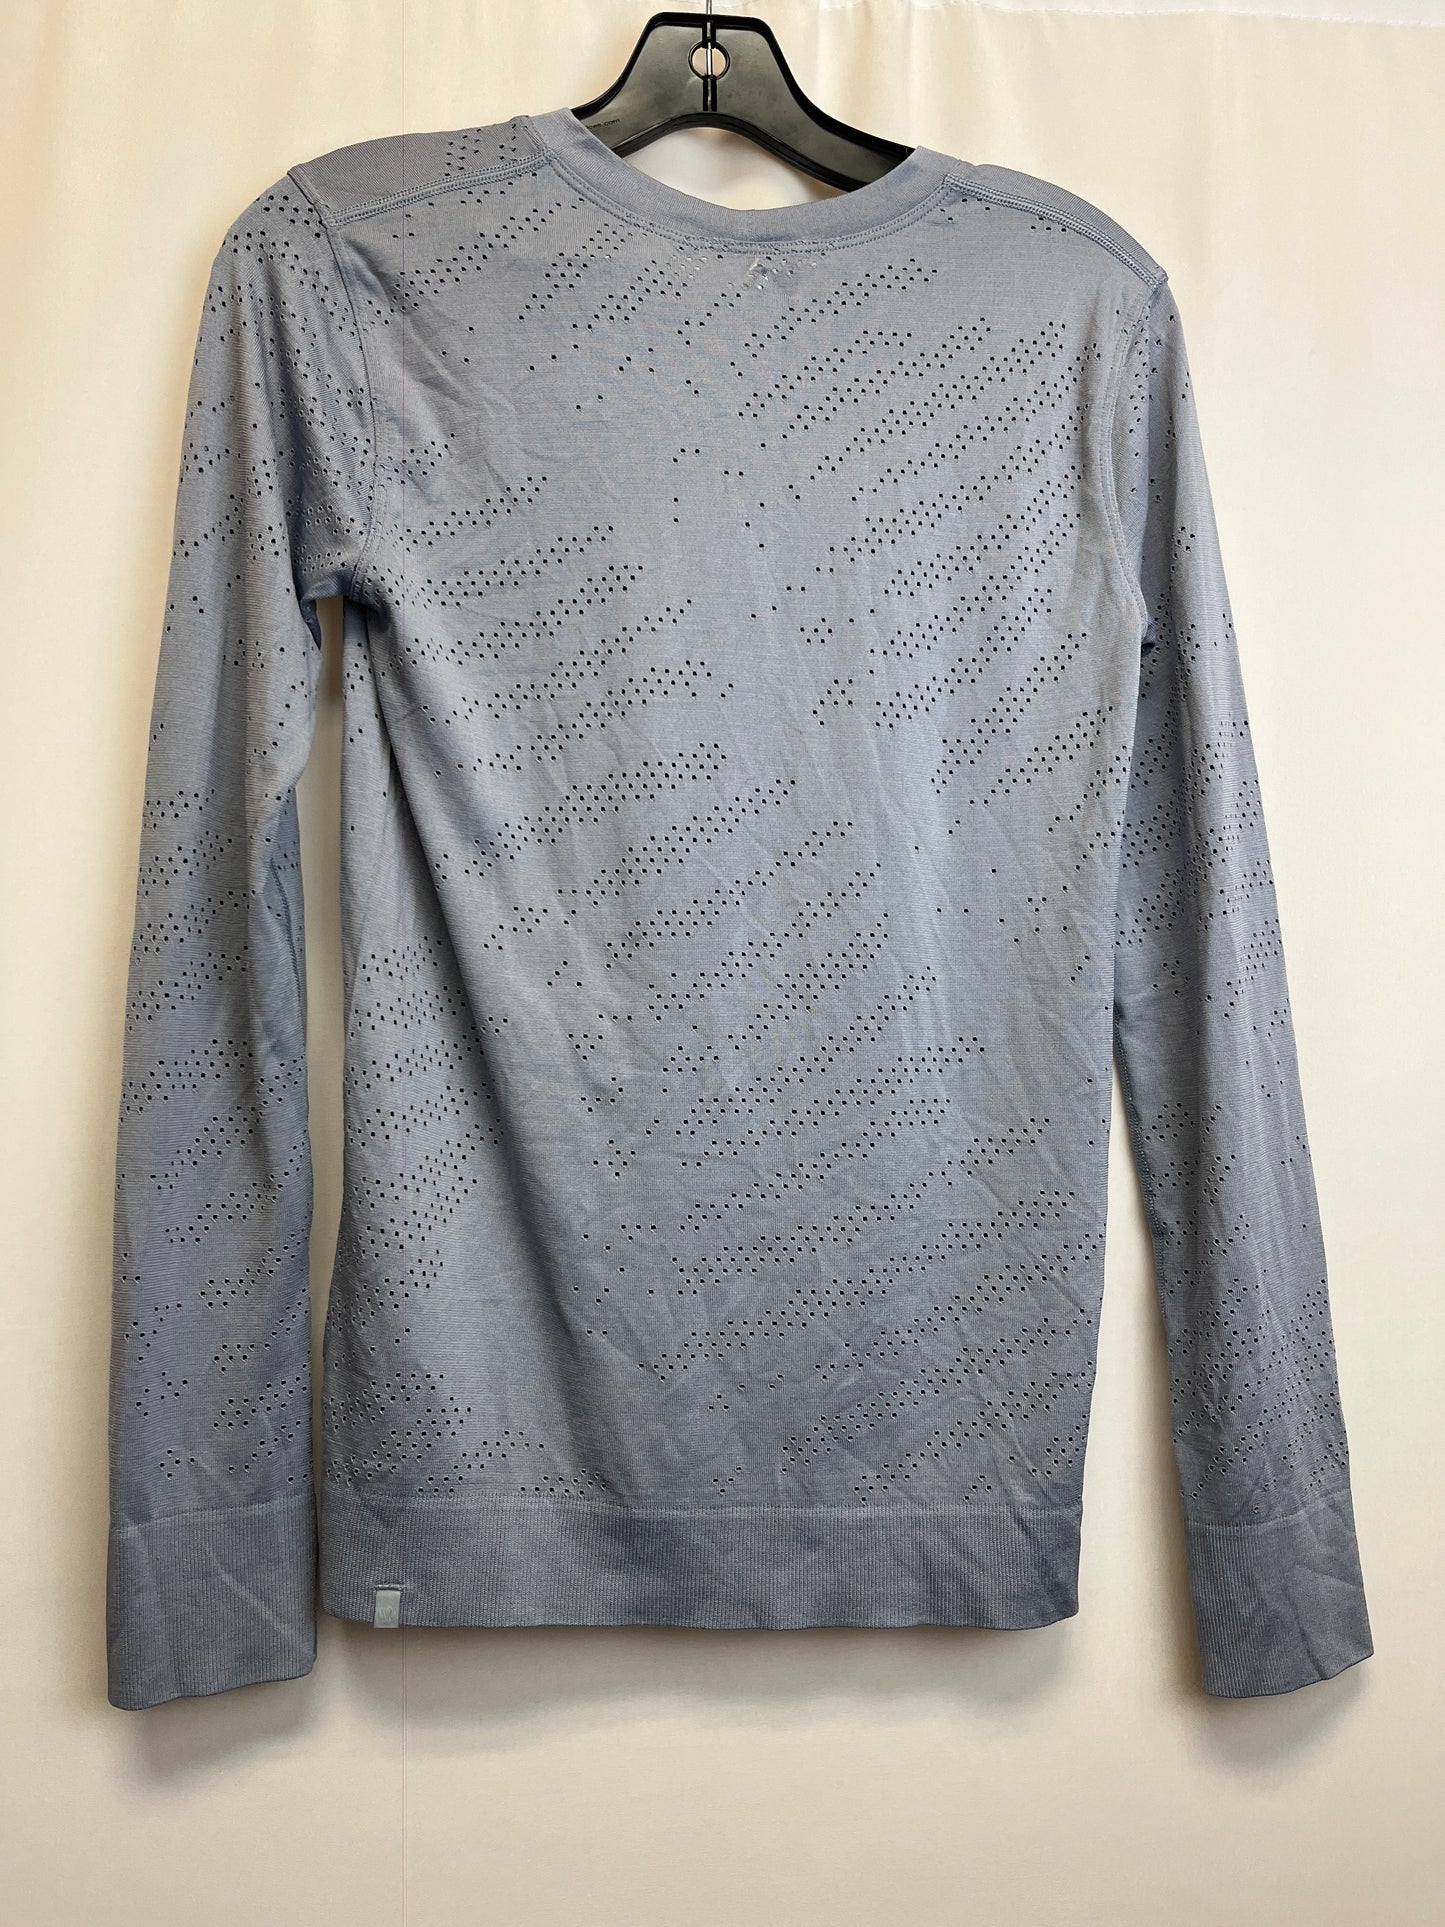 Athletic Sweatshirt Crewneck By Lululemon Size: 4